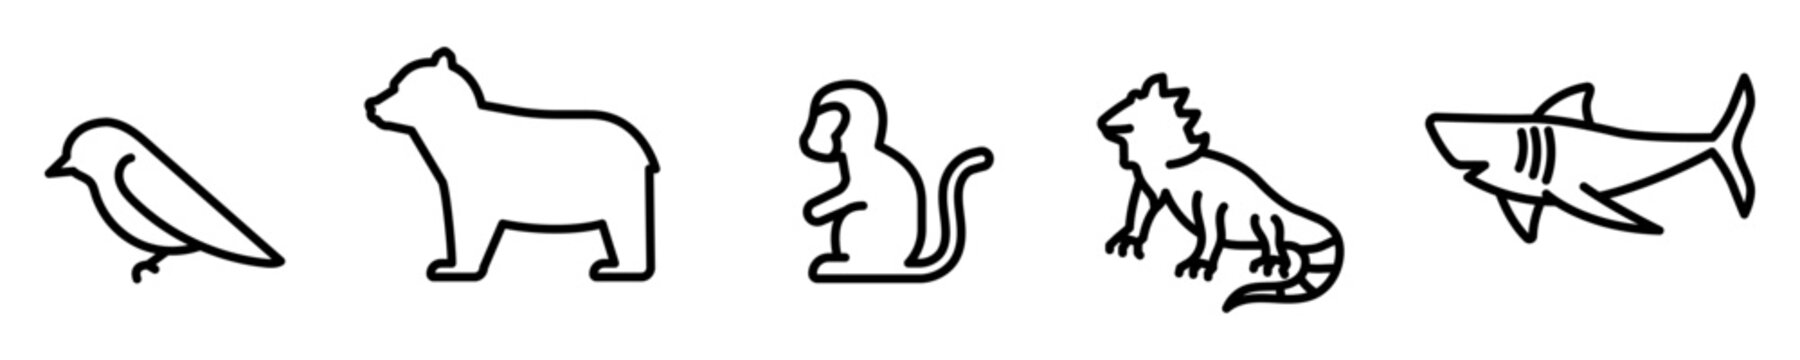 Conjunto de iconos de animales vertebrados. Ave, oso, mono, iguana, tiburón, pez. Ilustración vectorial